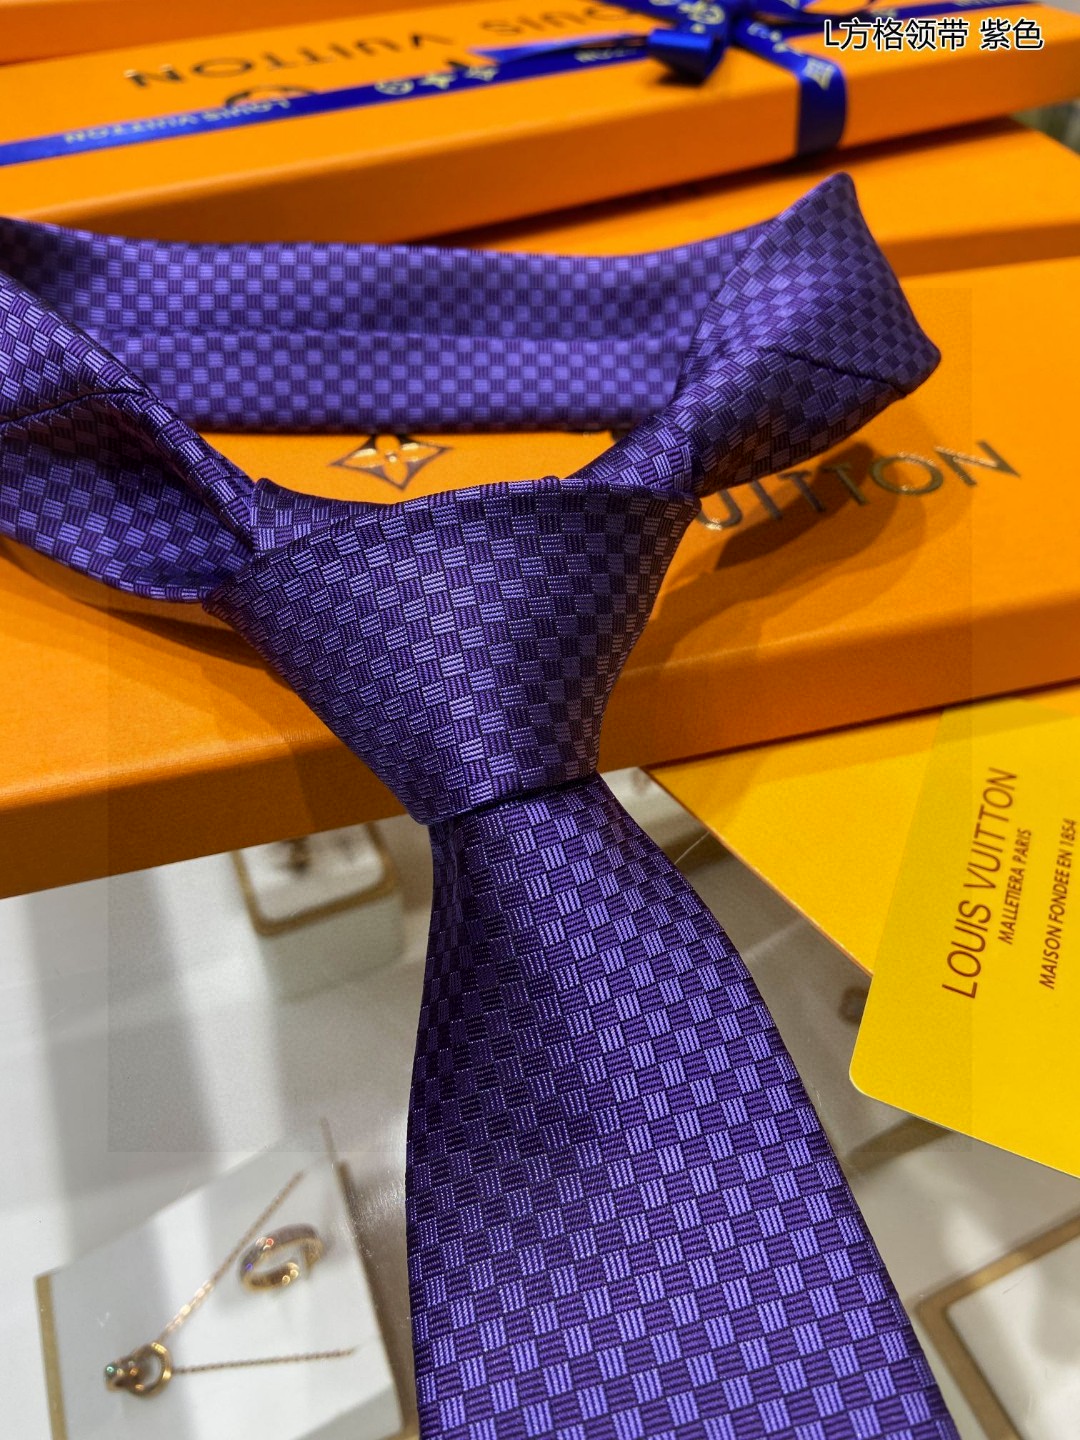 专柜同步男士领带系列L方格领带稀有展现精湛手工与时尚优雅的理想选择这款领带将标志性的Damier图案以同